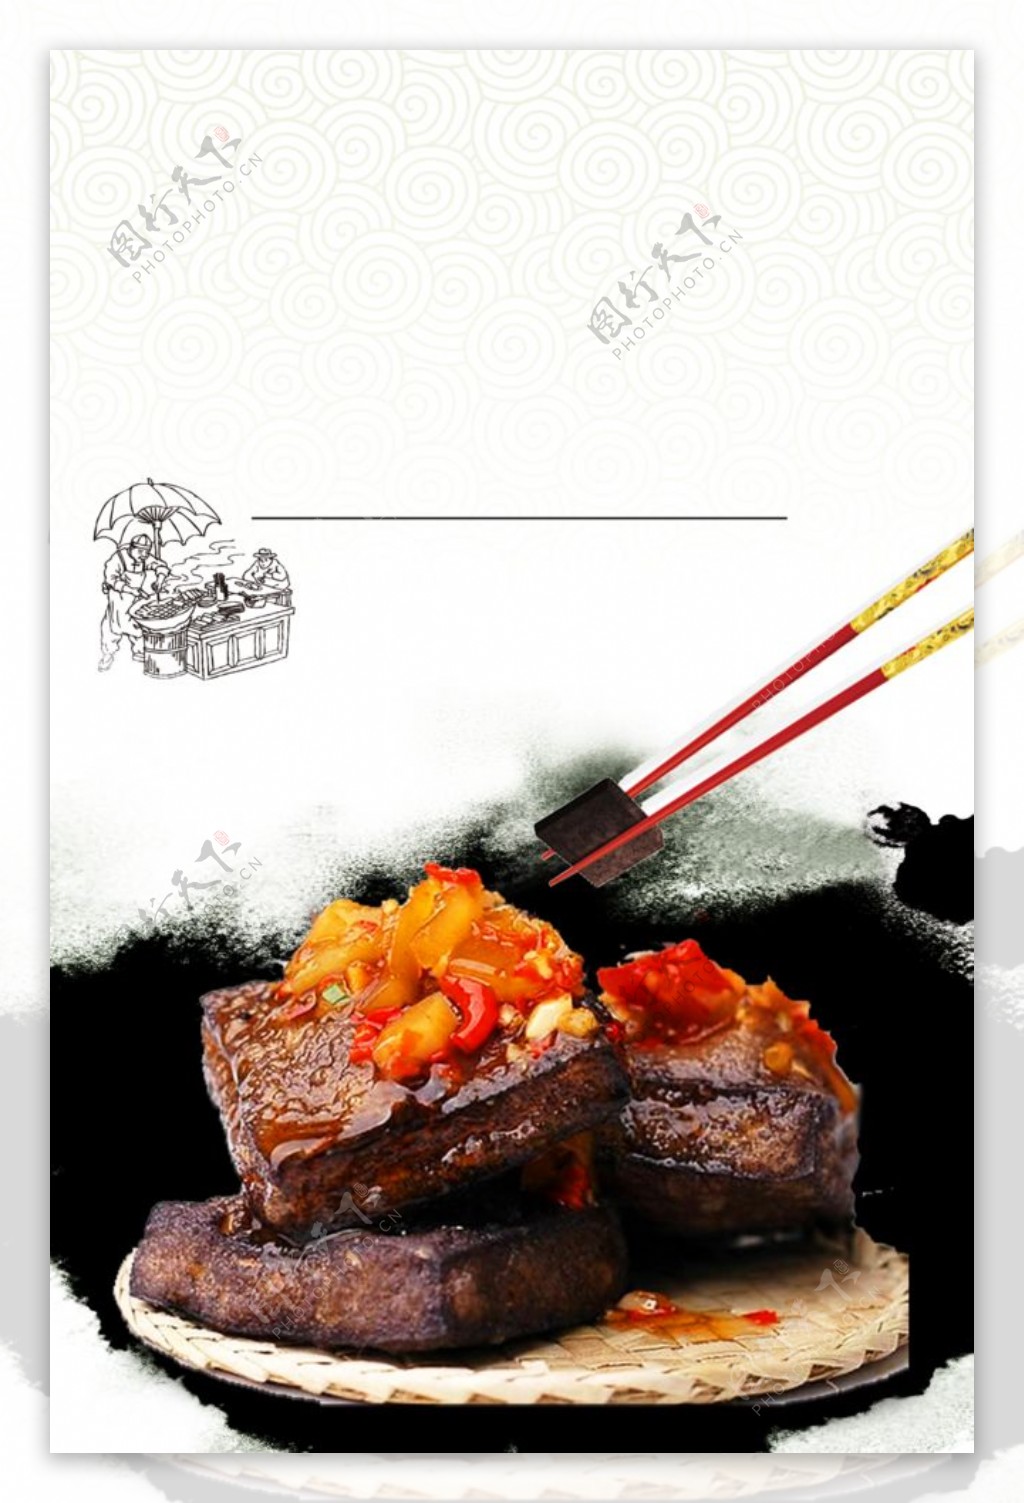 传统美食臭豆腐海报